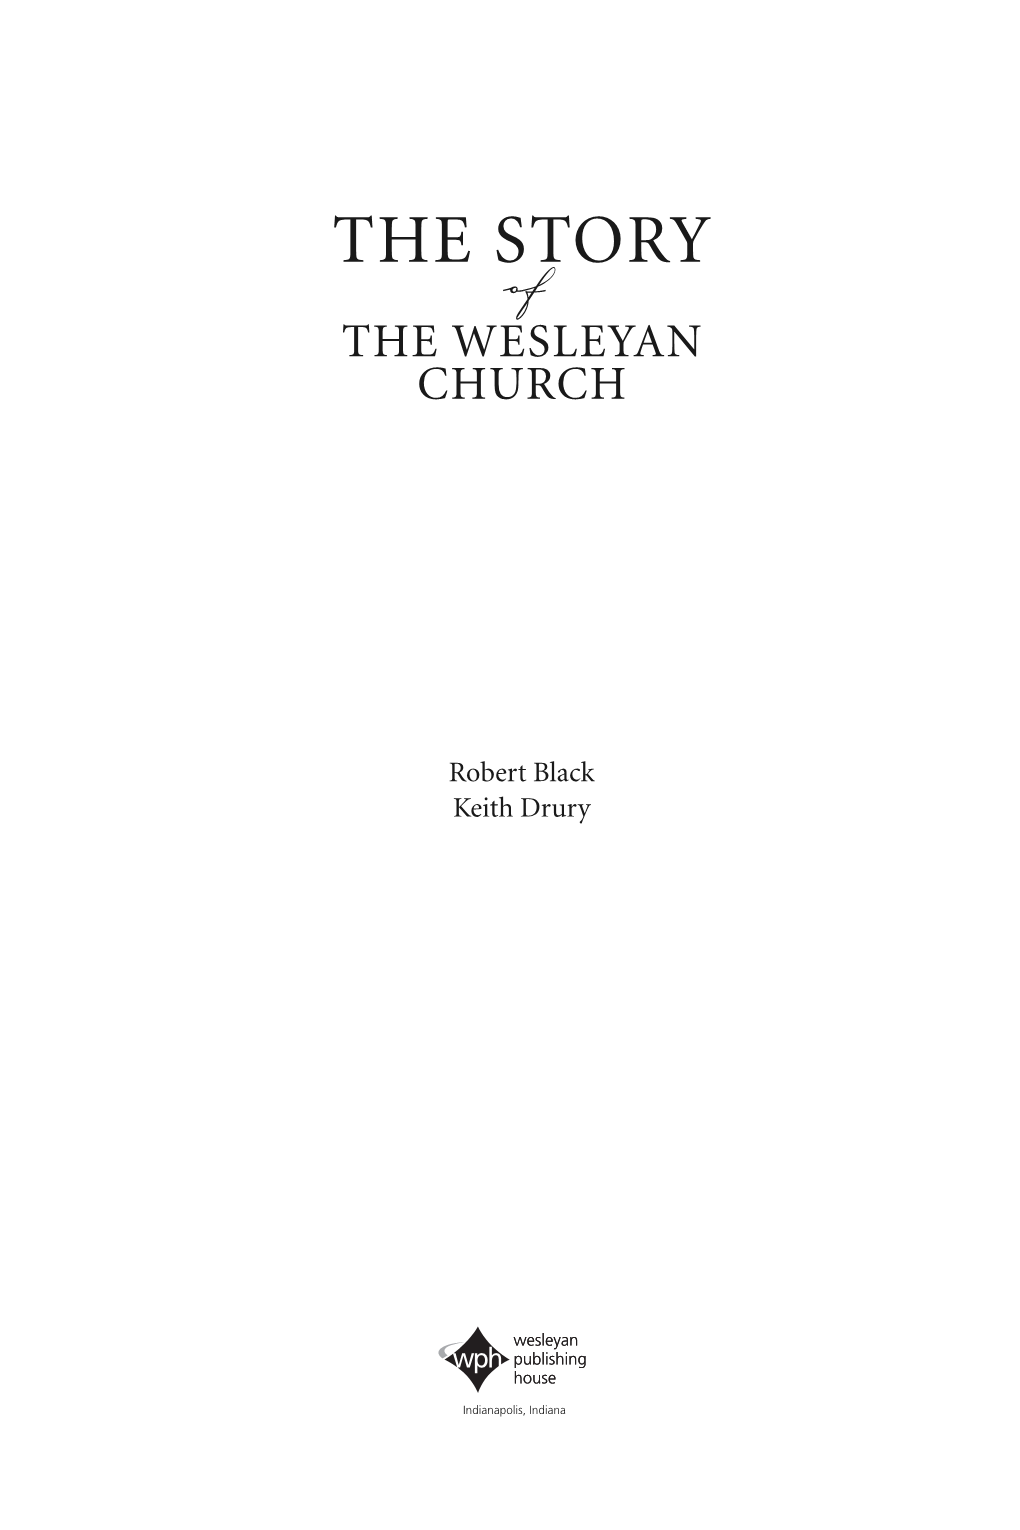 The Story of the Wesleyan Church / Robert Black, Keith Drury